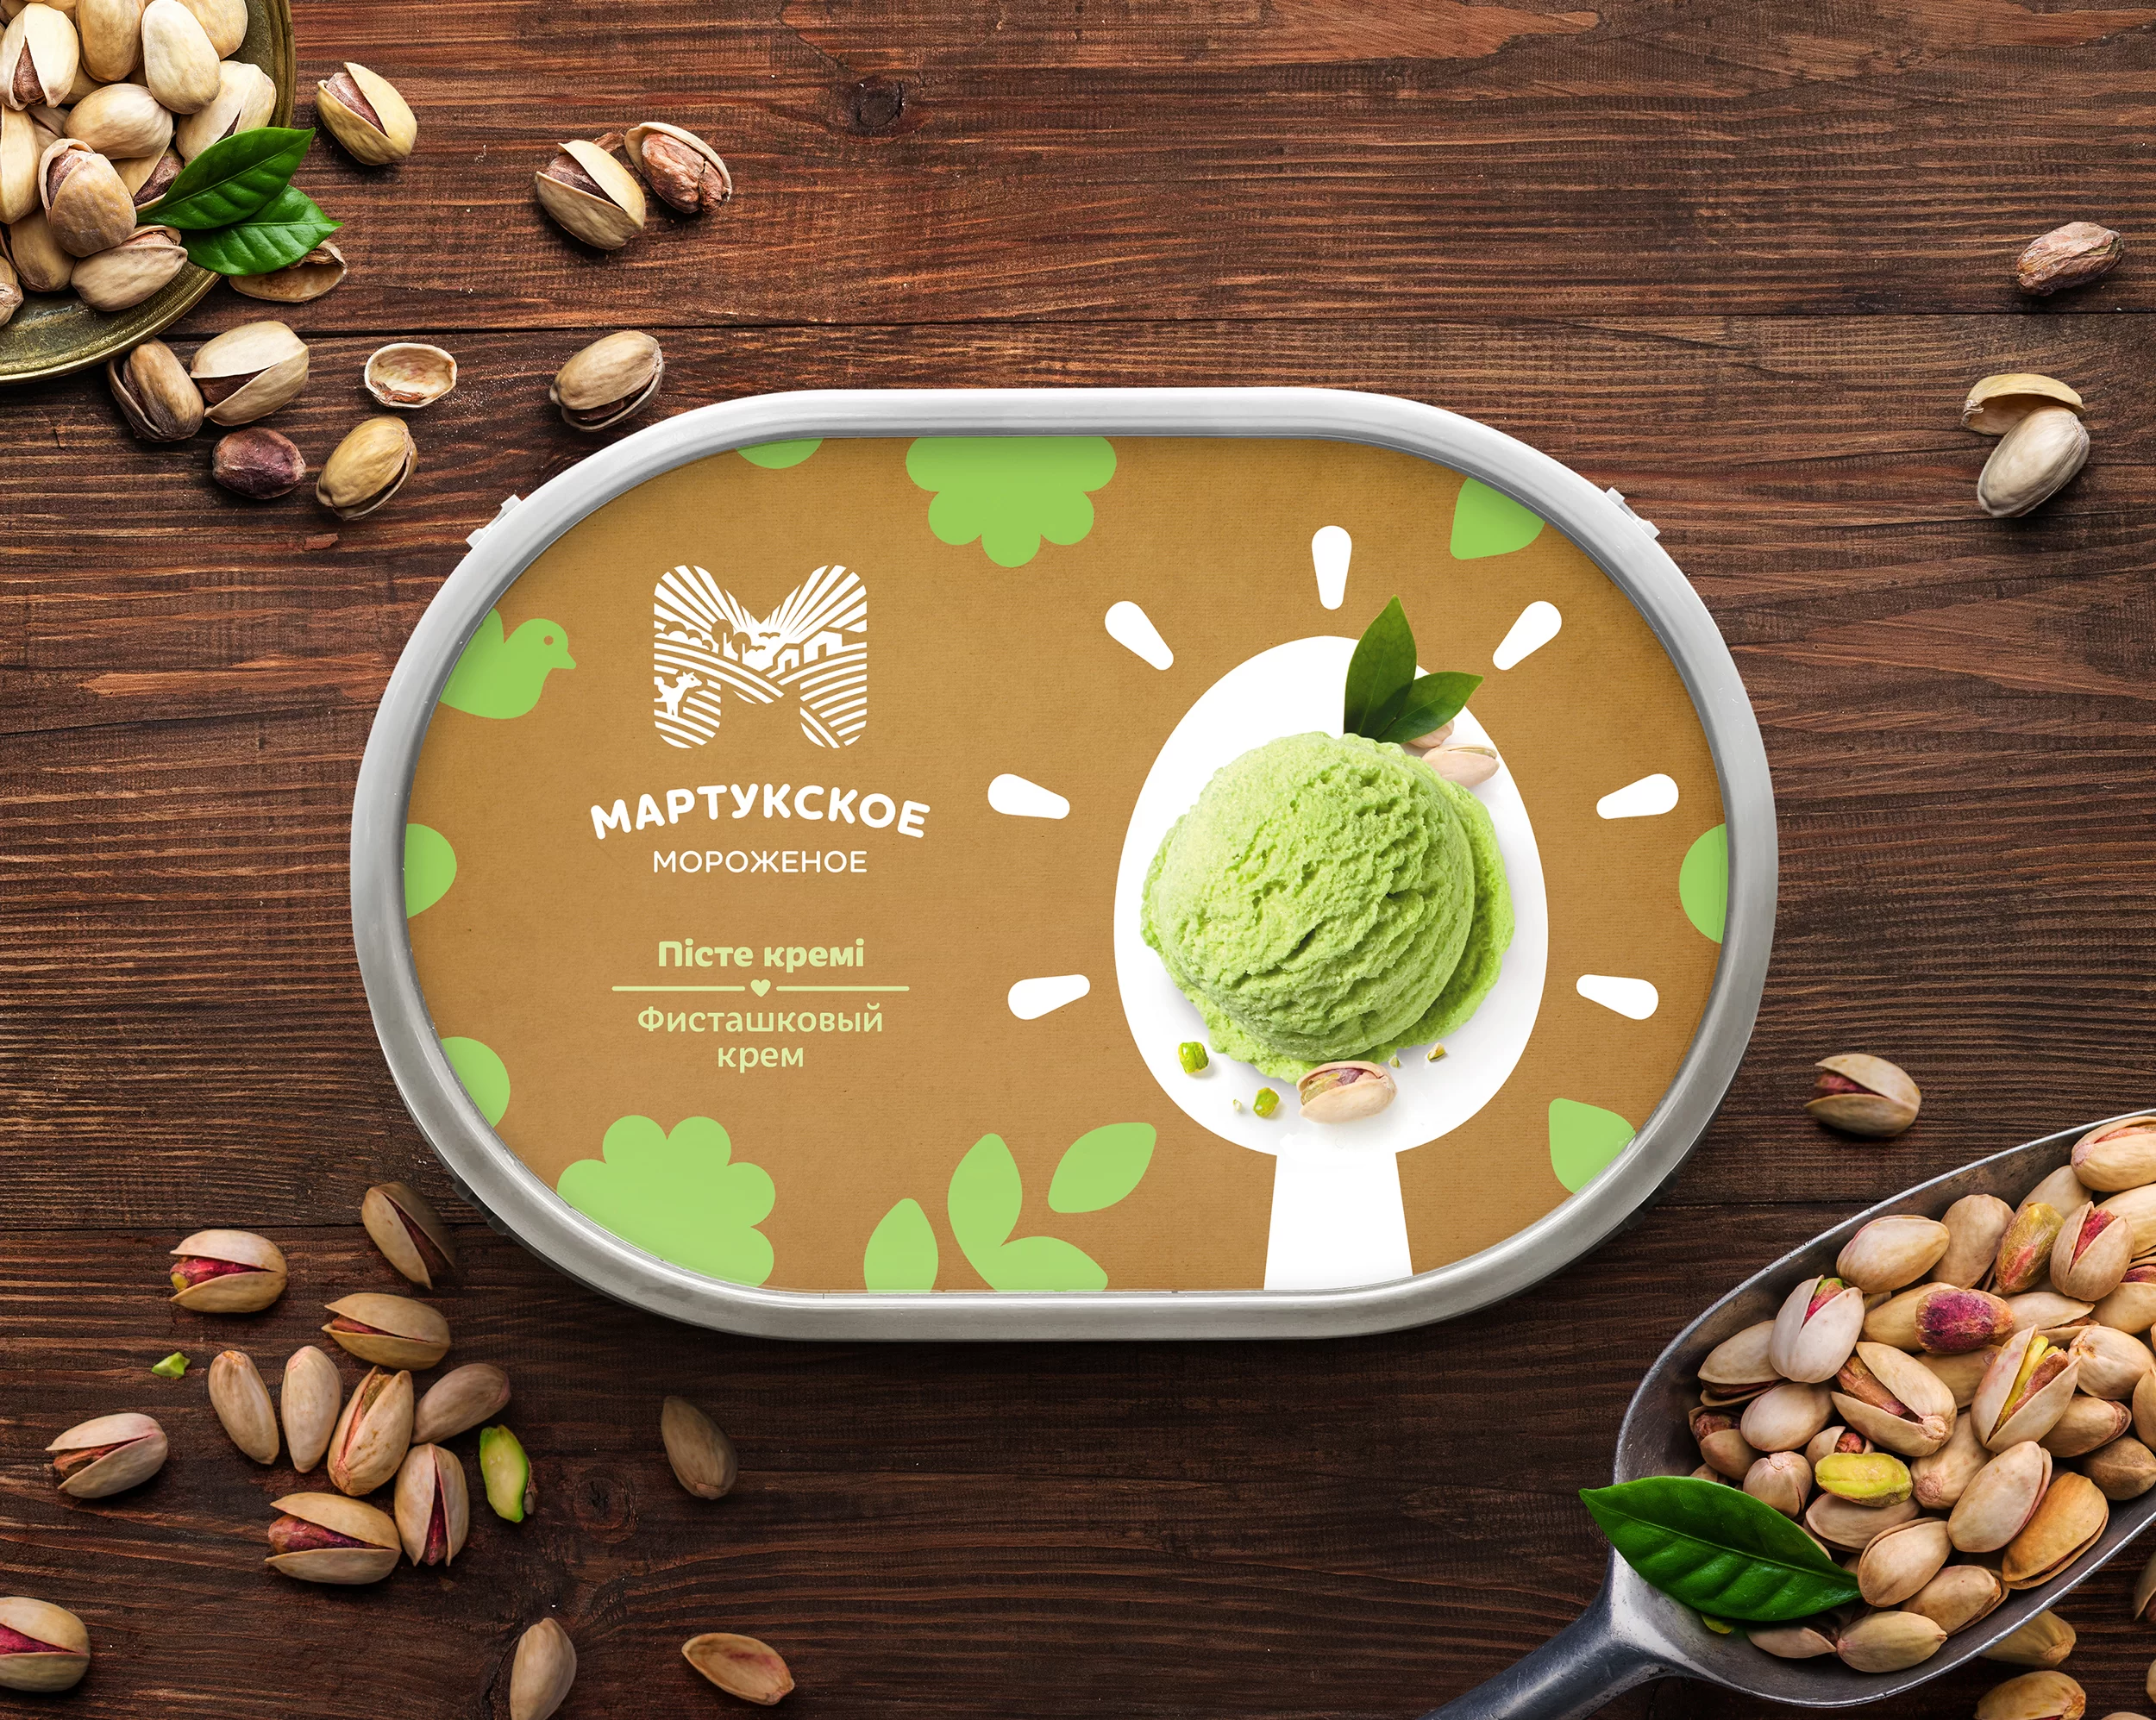 Новый бренд мороженого | МАРТУКСКОЕ